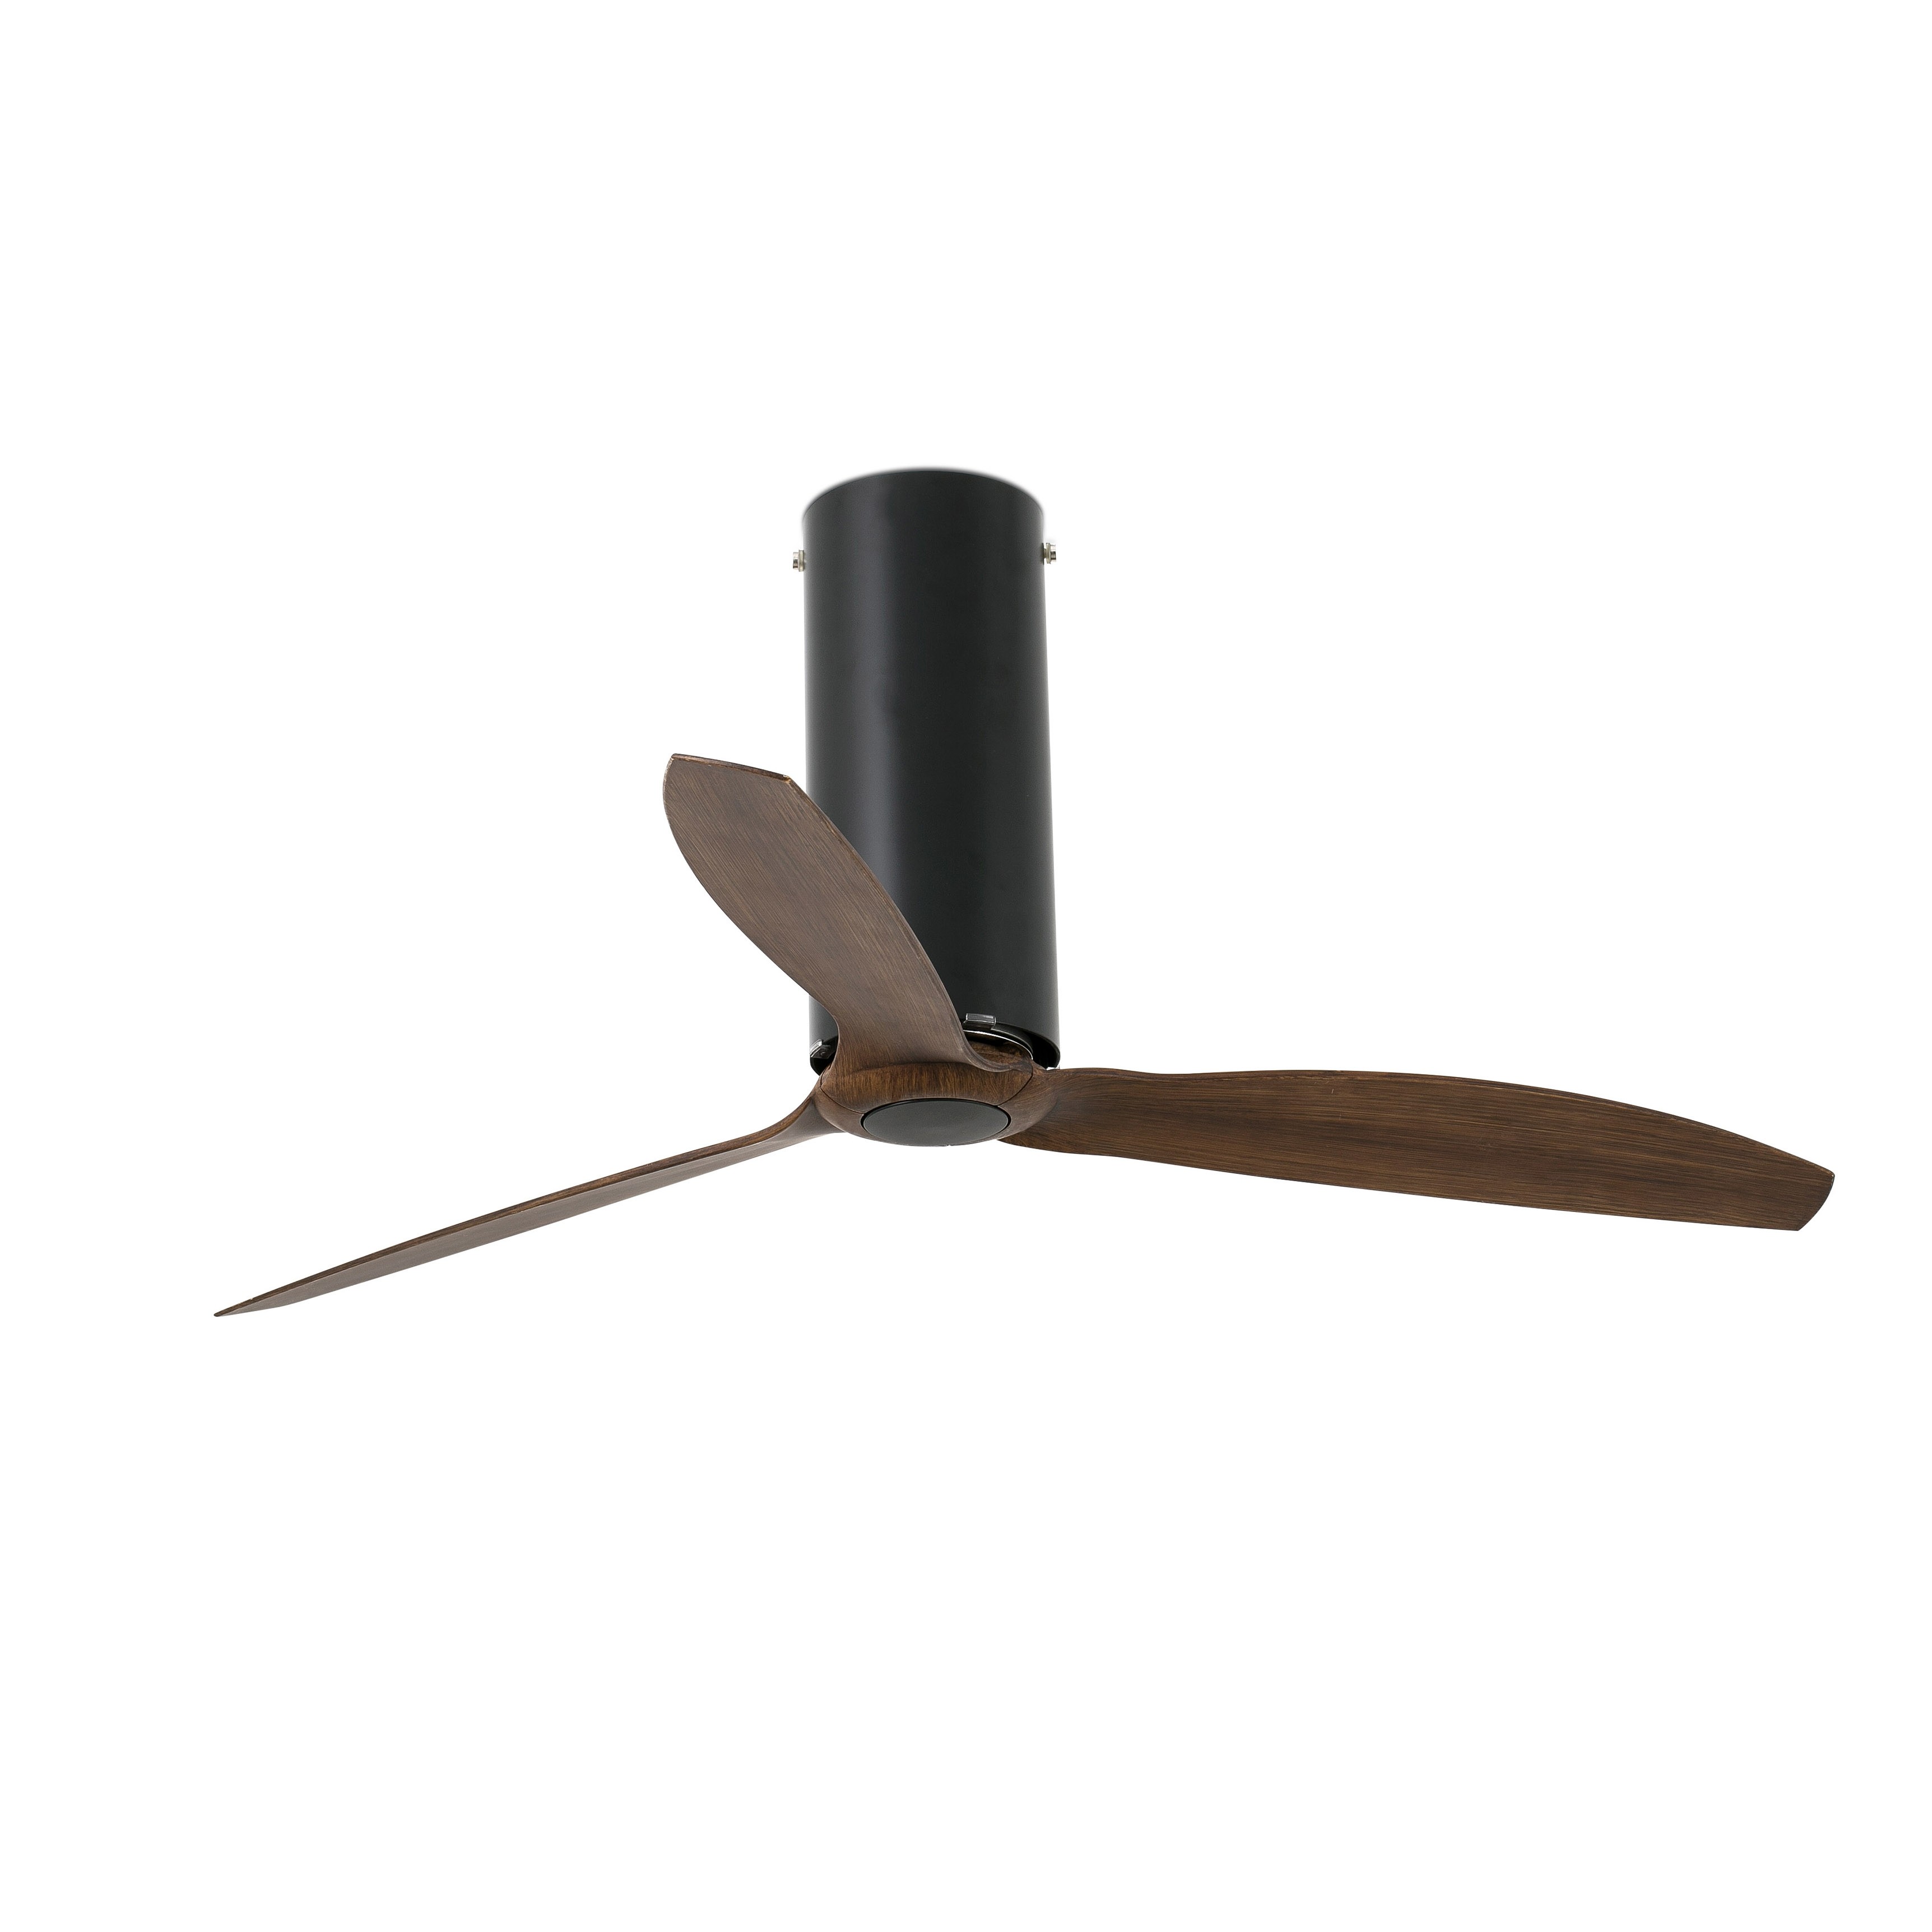 Faro Матово-черный / деревянный потолочный вентилятор Tube Fan